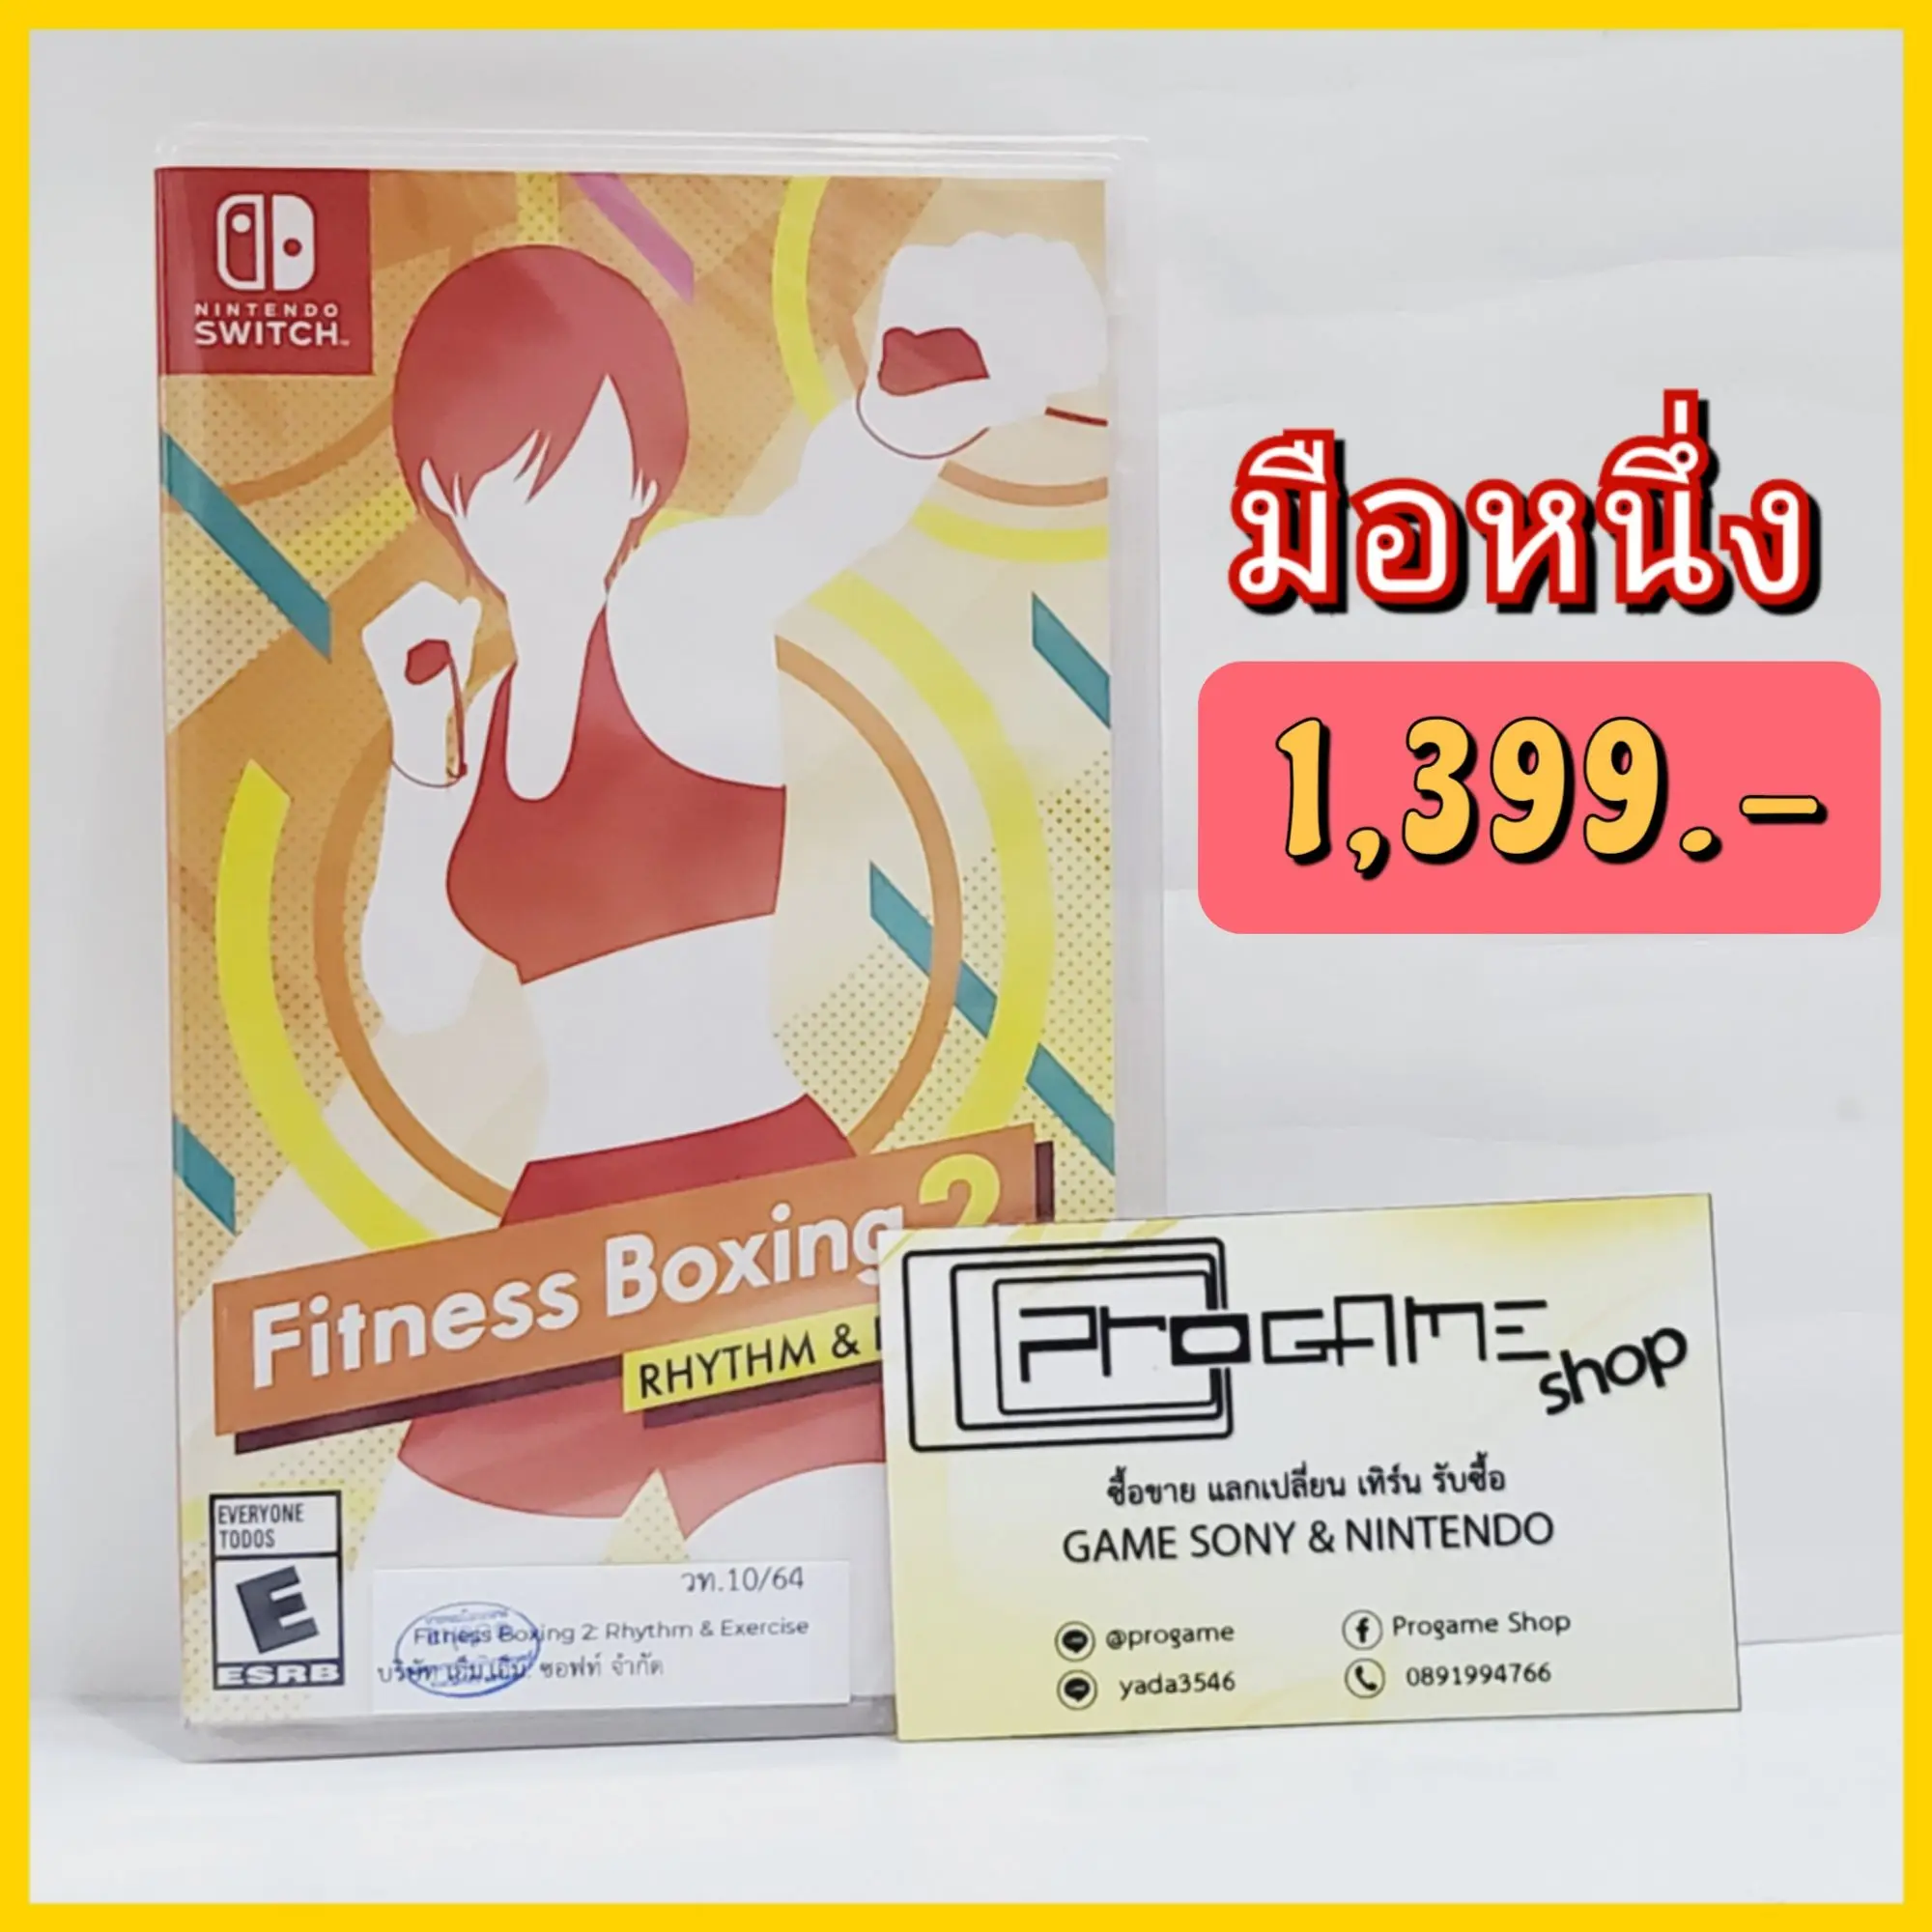 Nintendo Switch : Fitness Boxing 2 Rhythm & Exercise